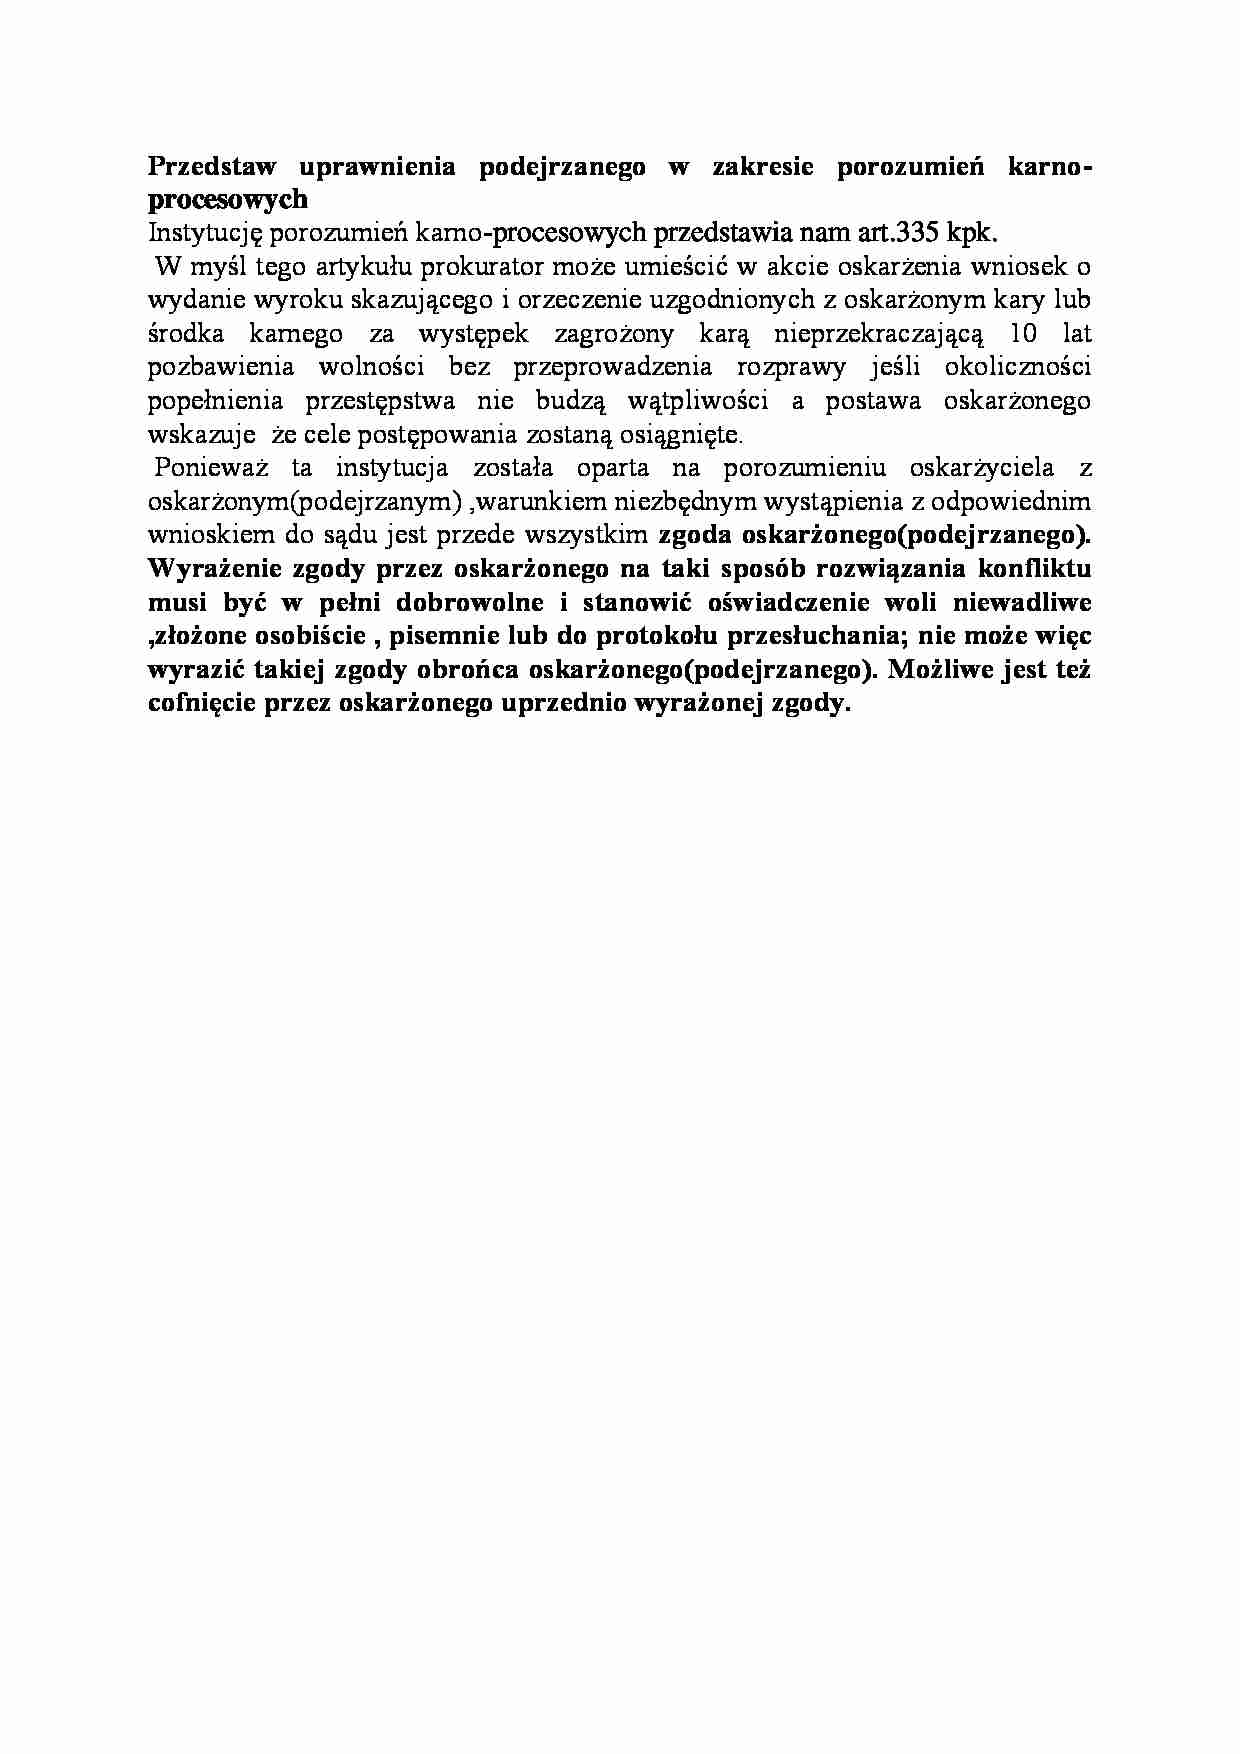 Uprawnienia podejrzanego w zakresie porozumień karno-procesowych-opracowanie - strona 1